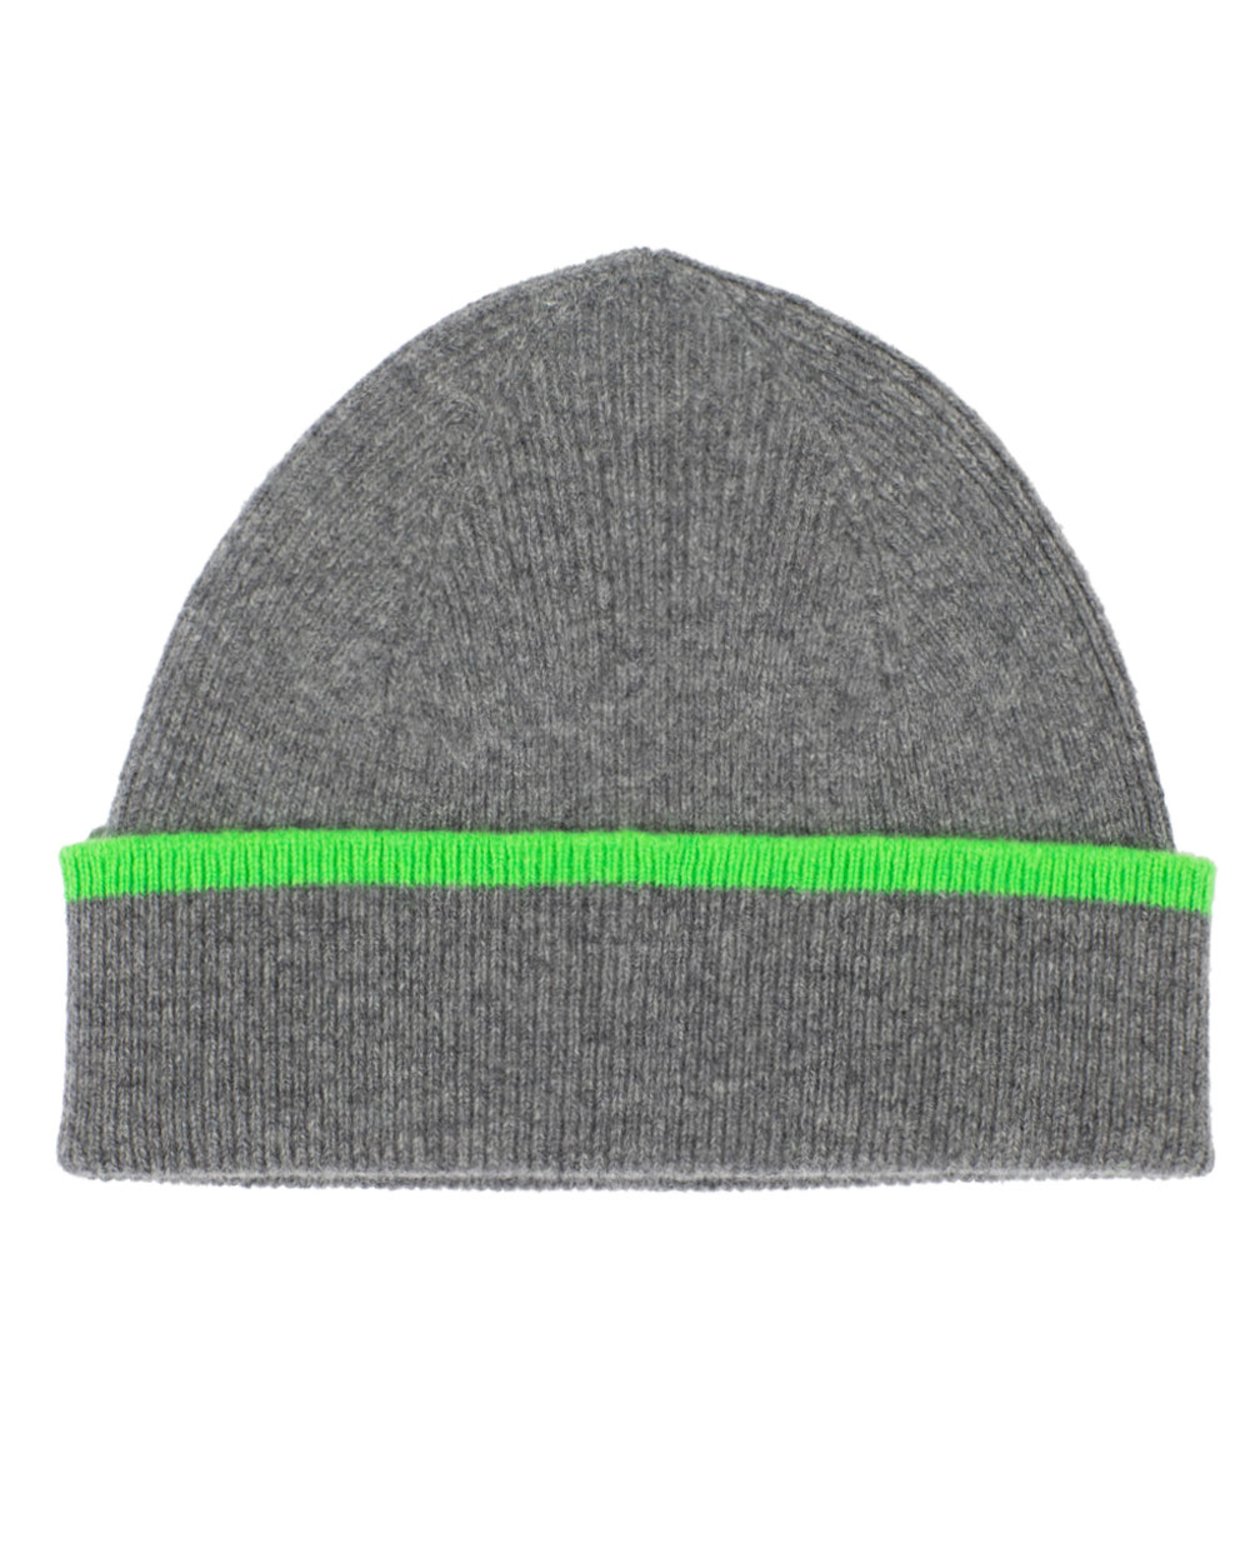 Lambswool Dunure Hat in Grey & Neon Green